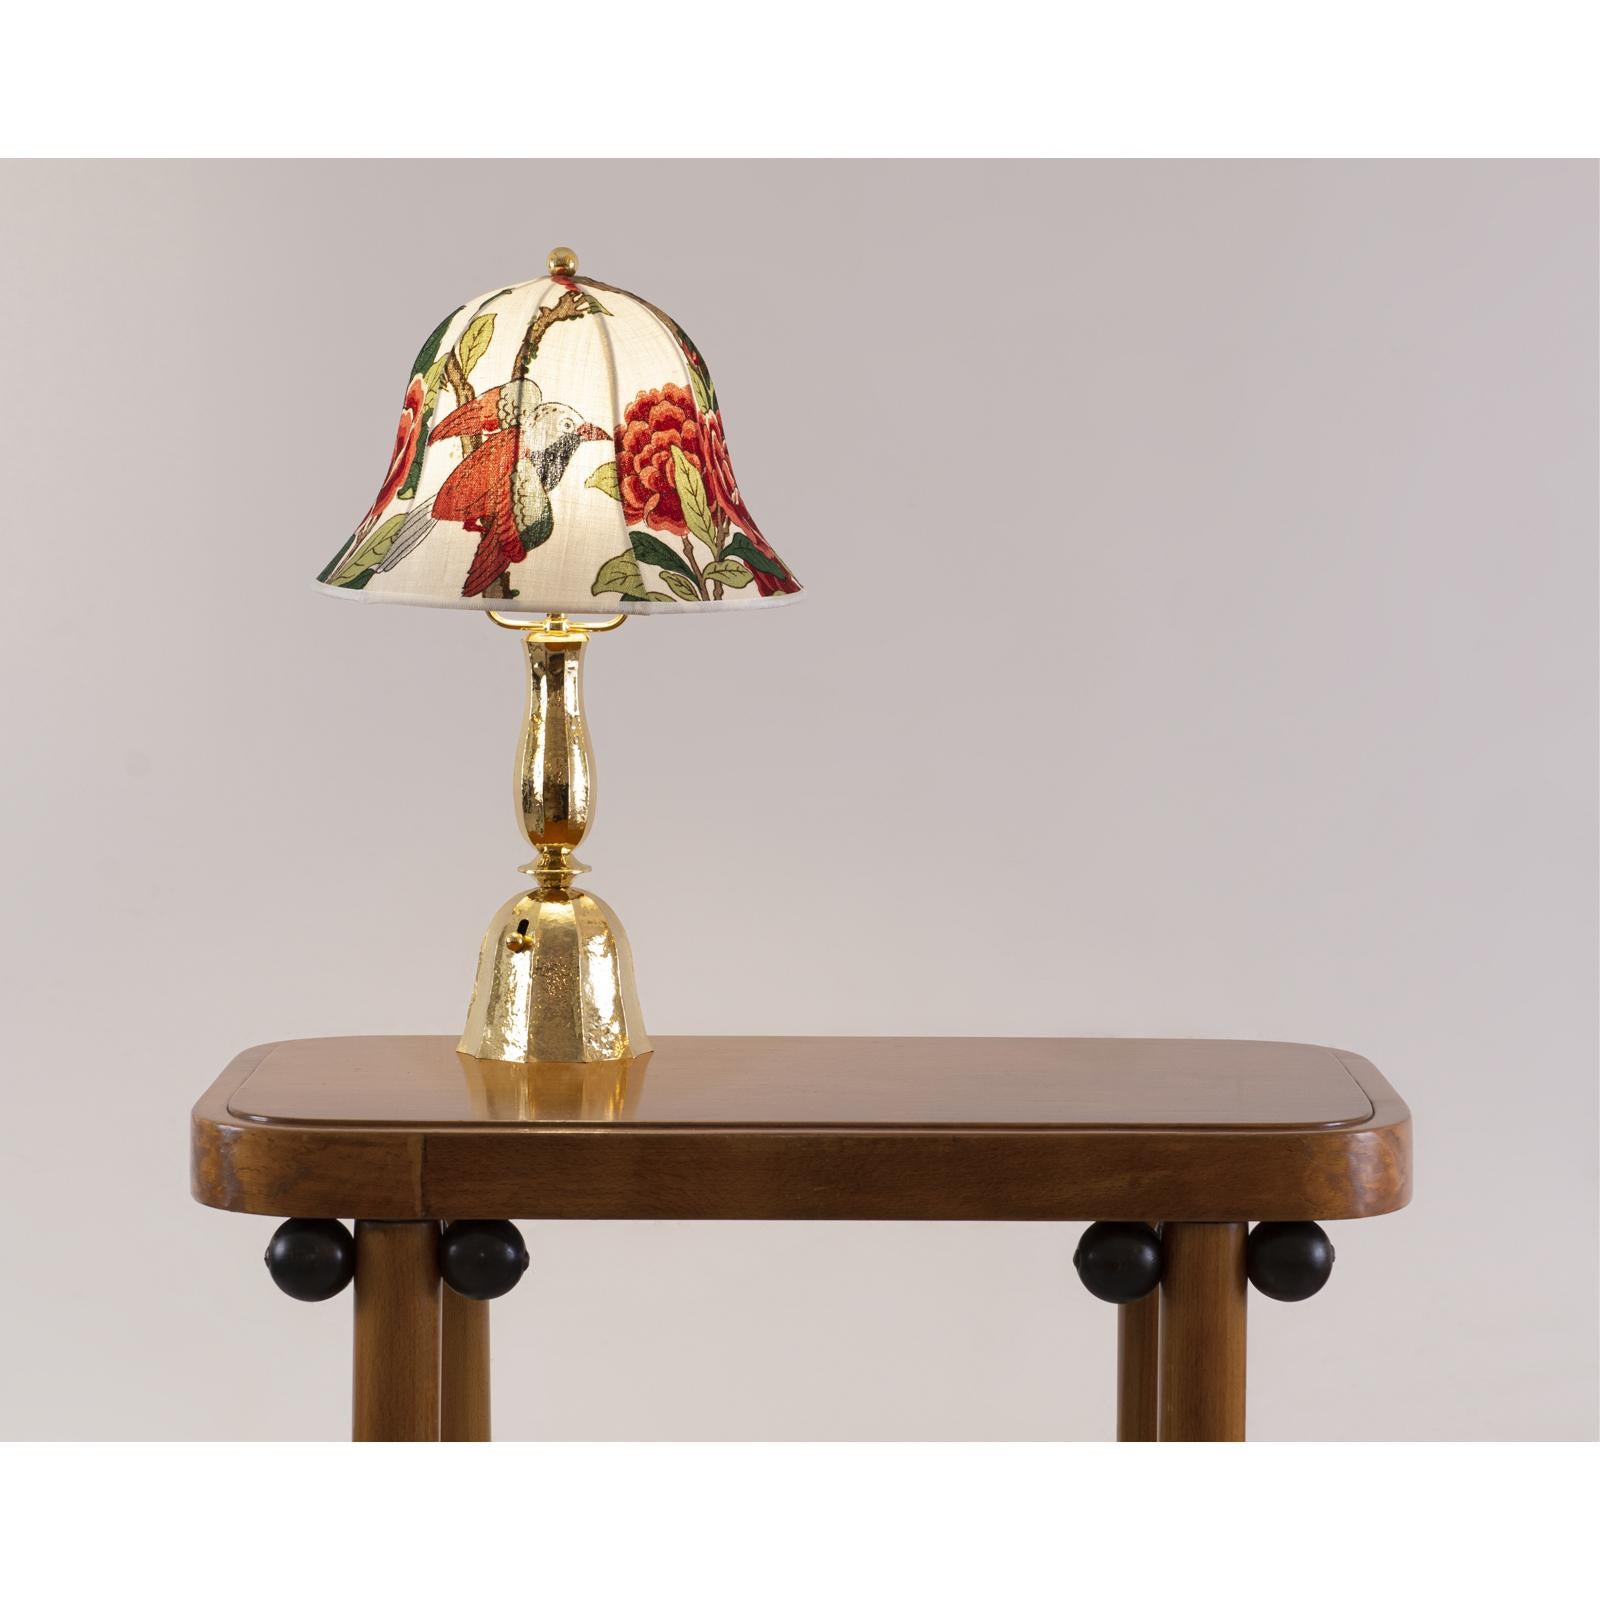 Brass Josef Frank Fabric /Josef Hoffmann Wiener Werkstaette Table Lamp, Re-Edition For Sale